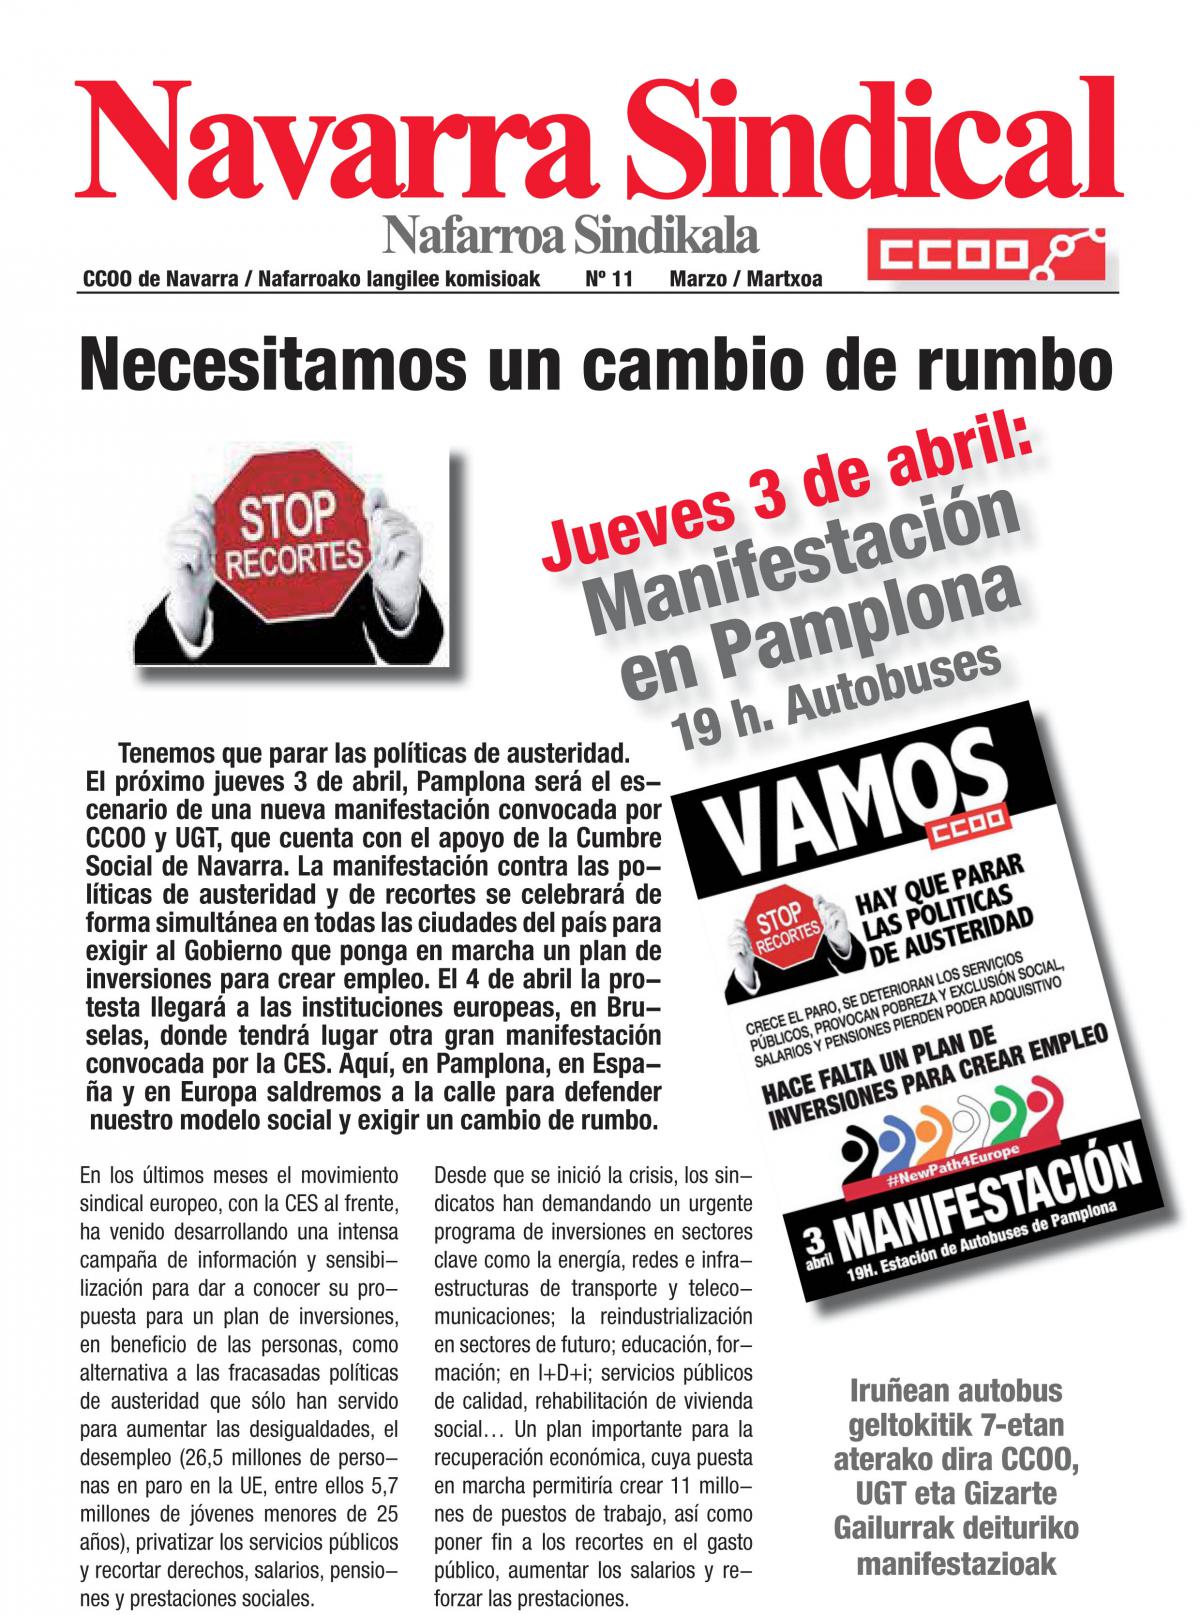 Necesitamos un cambio de rumbo. 3 de abril, manifestacin en Pamplona